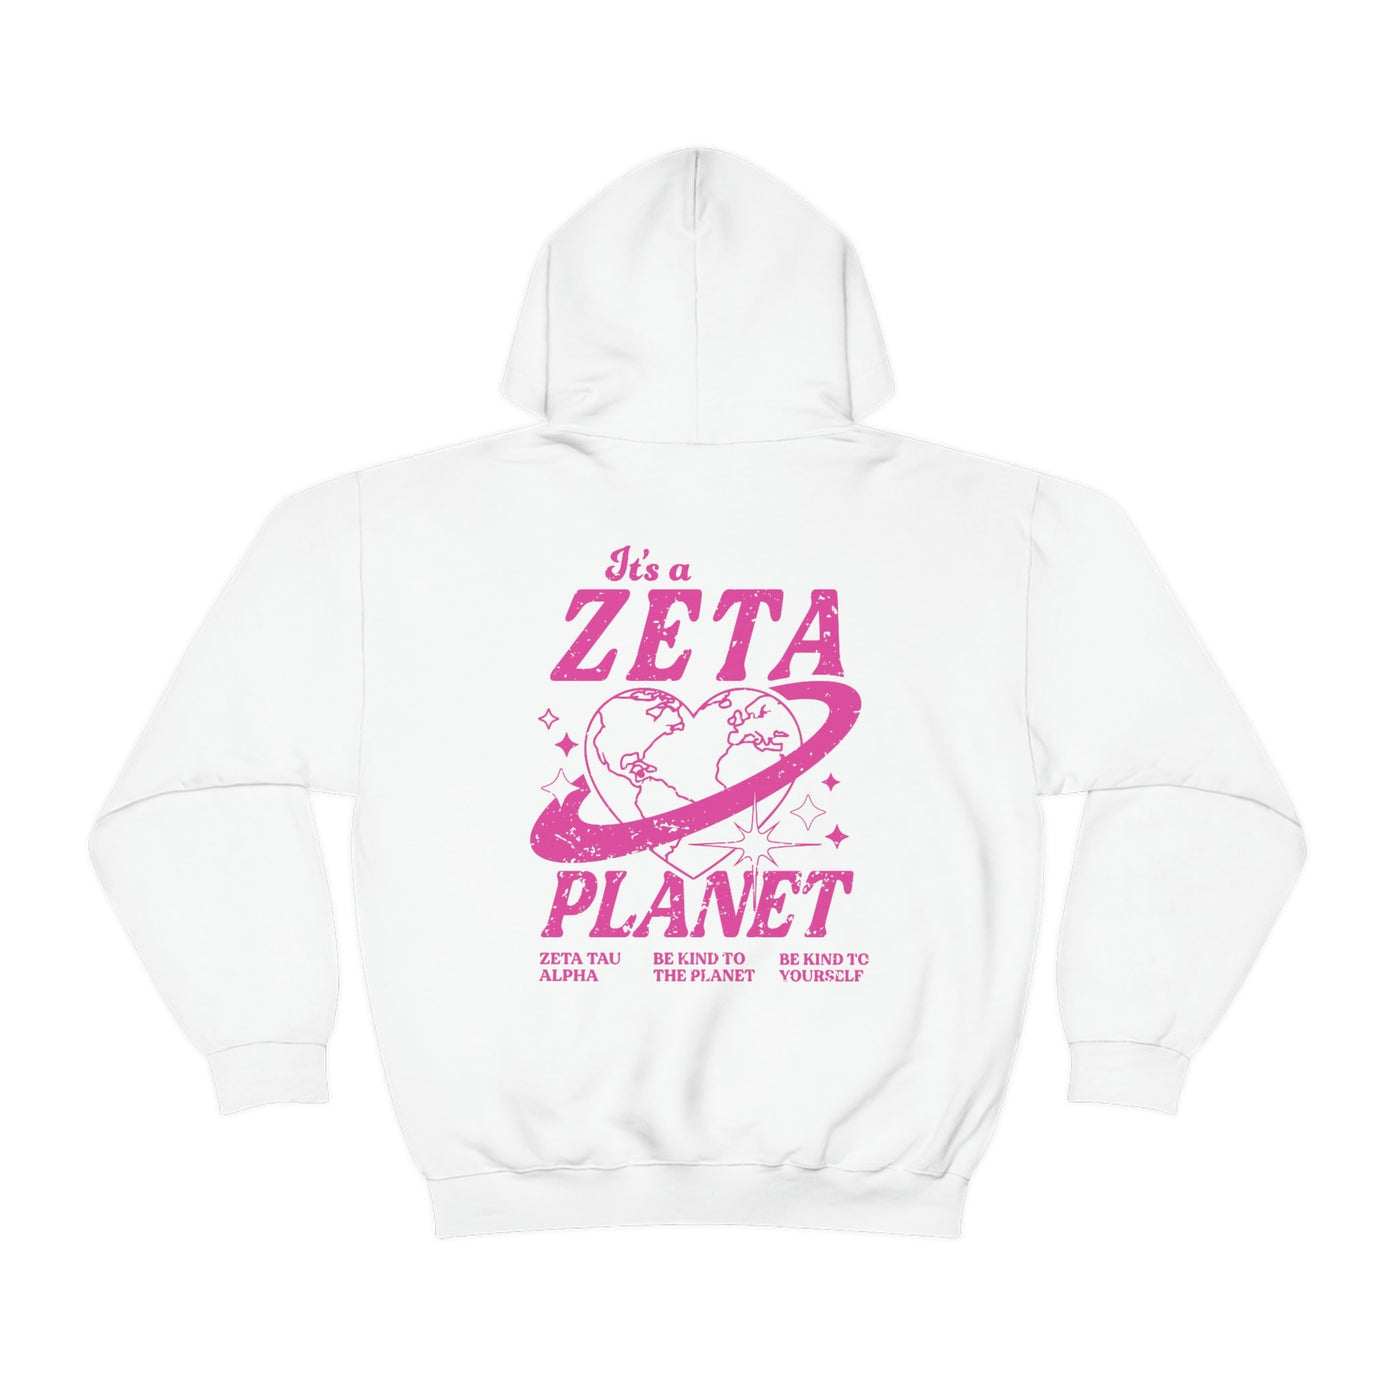 Zeta Tau Alpha Planet Hoodie | Be Kind to the Planet Trendy Sorority Hoodie | Greek Life Sweatshirt | Trendy Sorority Sweatshirt